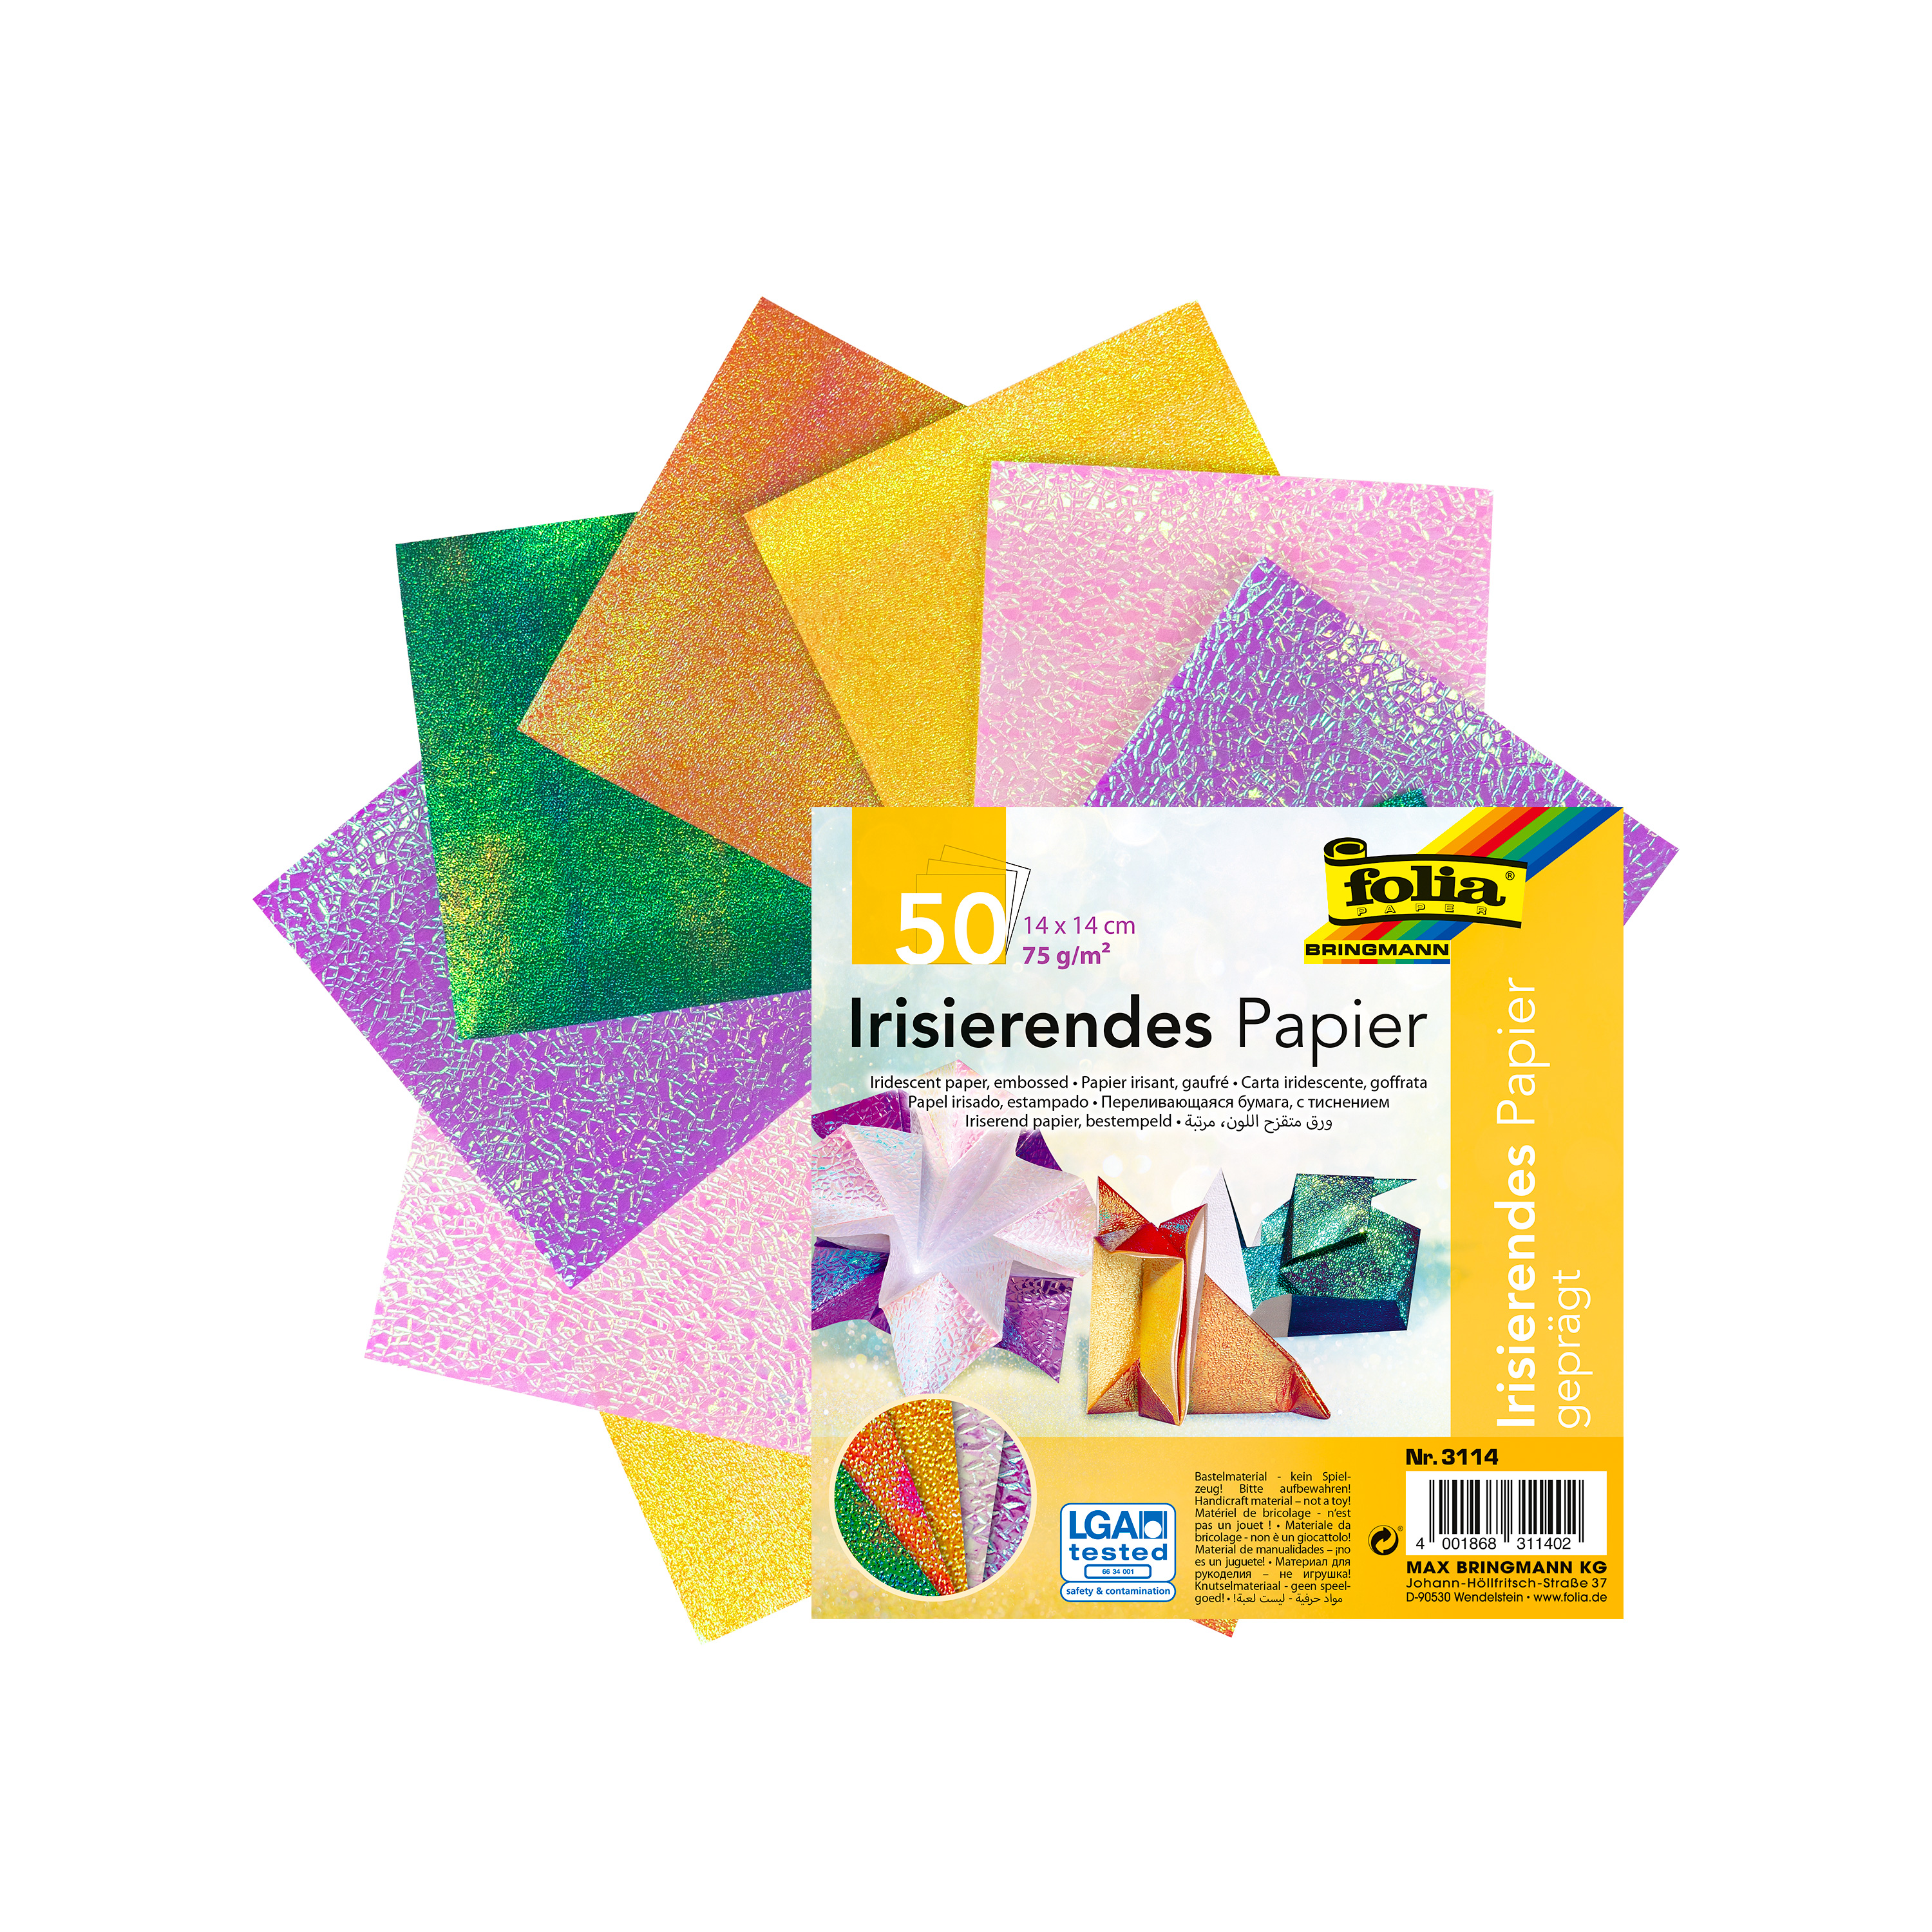 Faltblätter aus irisierendem Papier, 5 Farben, 14 x 14 cm